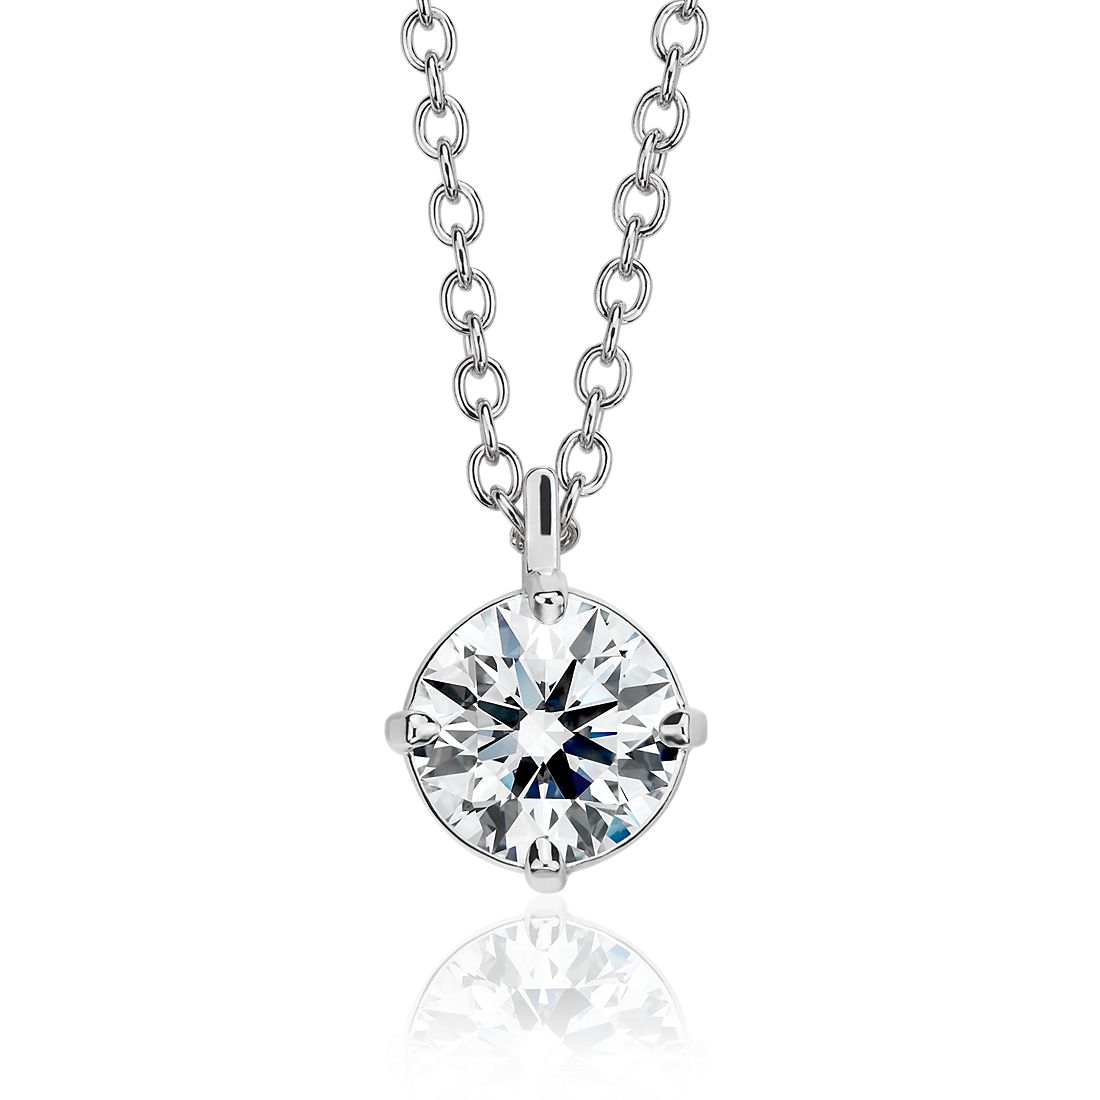 Astor Diamond Solitaire Pendant in Platinum (1 1/2 ct. tw.) - H / SI2